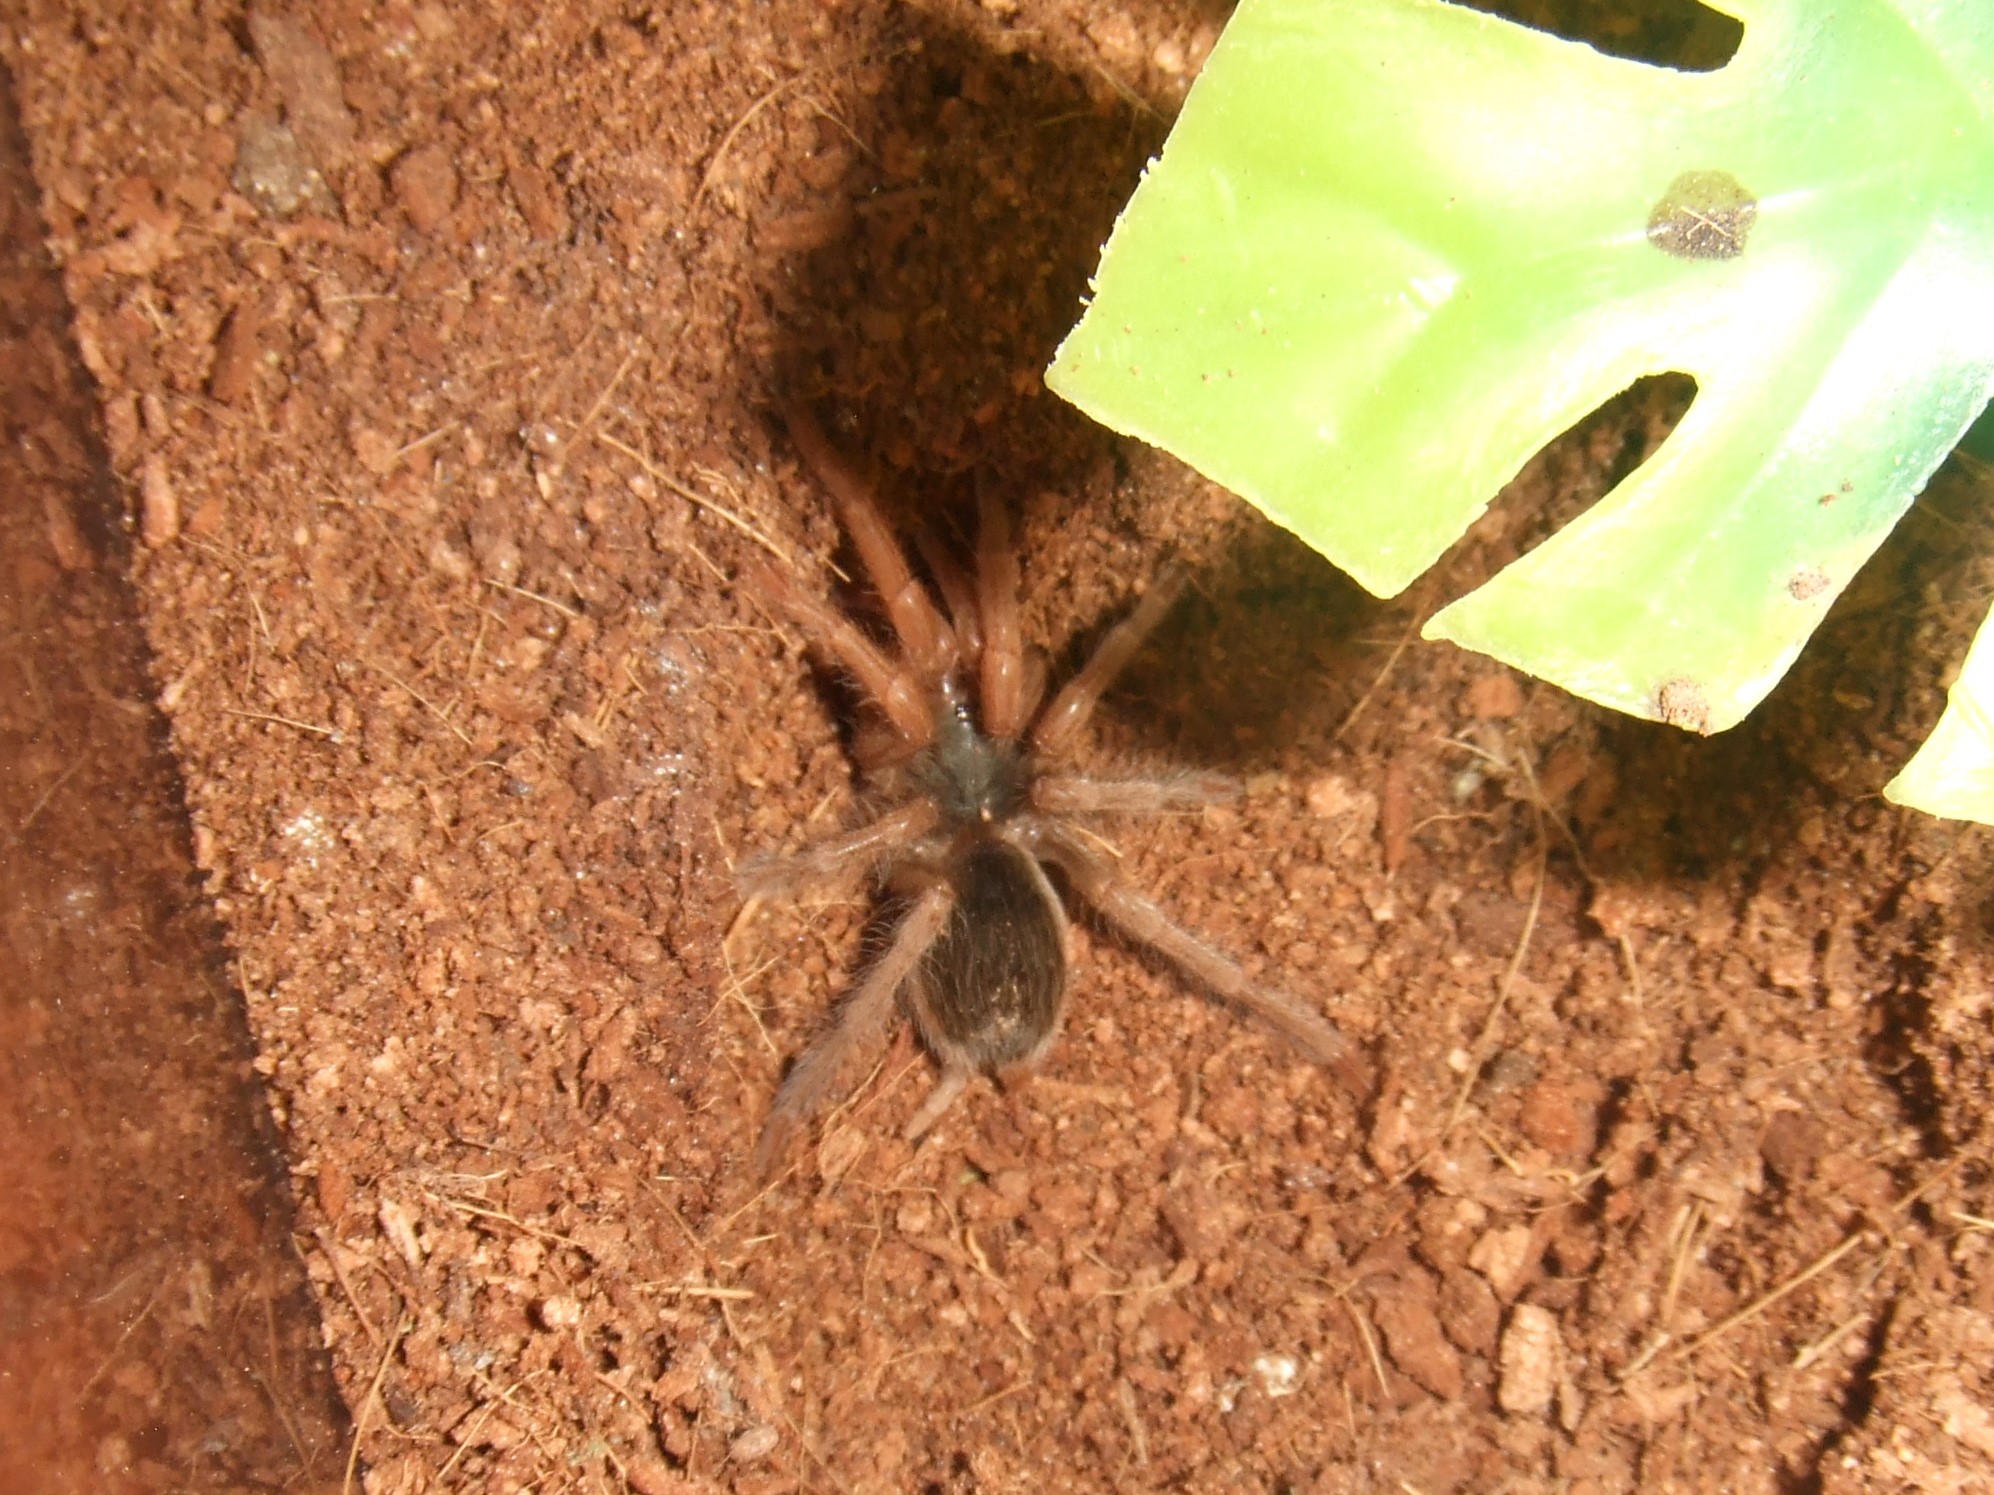 Neostenotarsus sp Guyana - Arawak